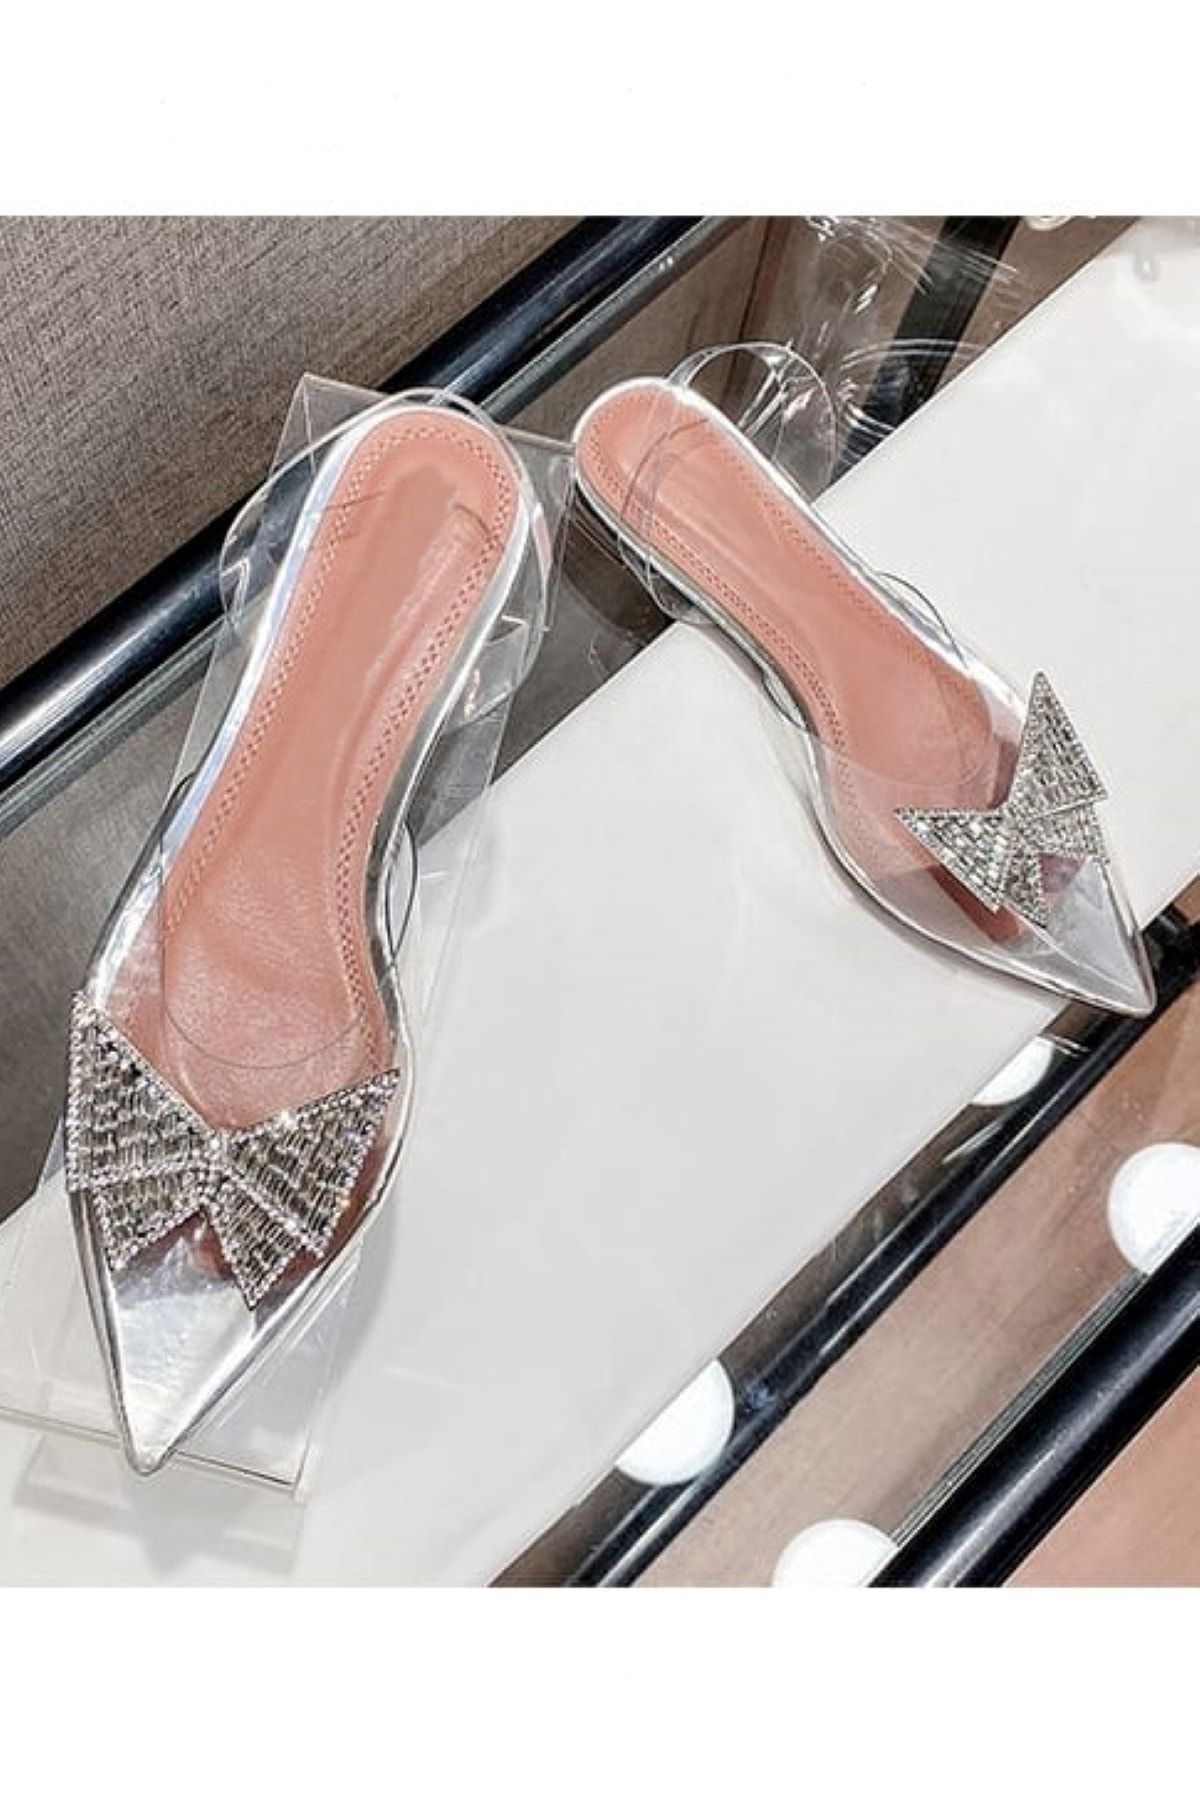 TrendyAnka Kadın Princess Gümüş Nude Taba Kelebek Tokalı 2 Cm Şeffaf Topuklu Taşlı Babet Sivri Burunlu Ayakkabı